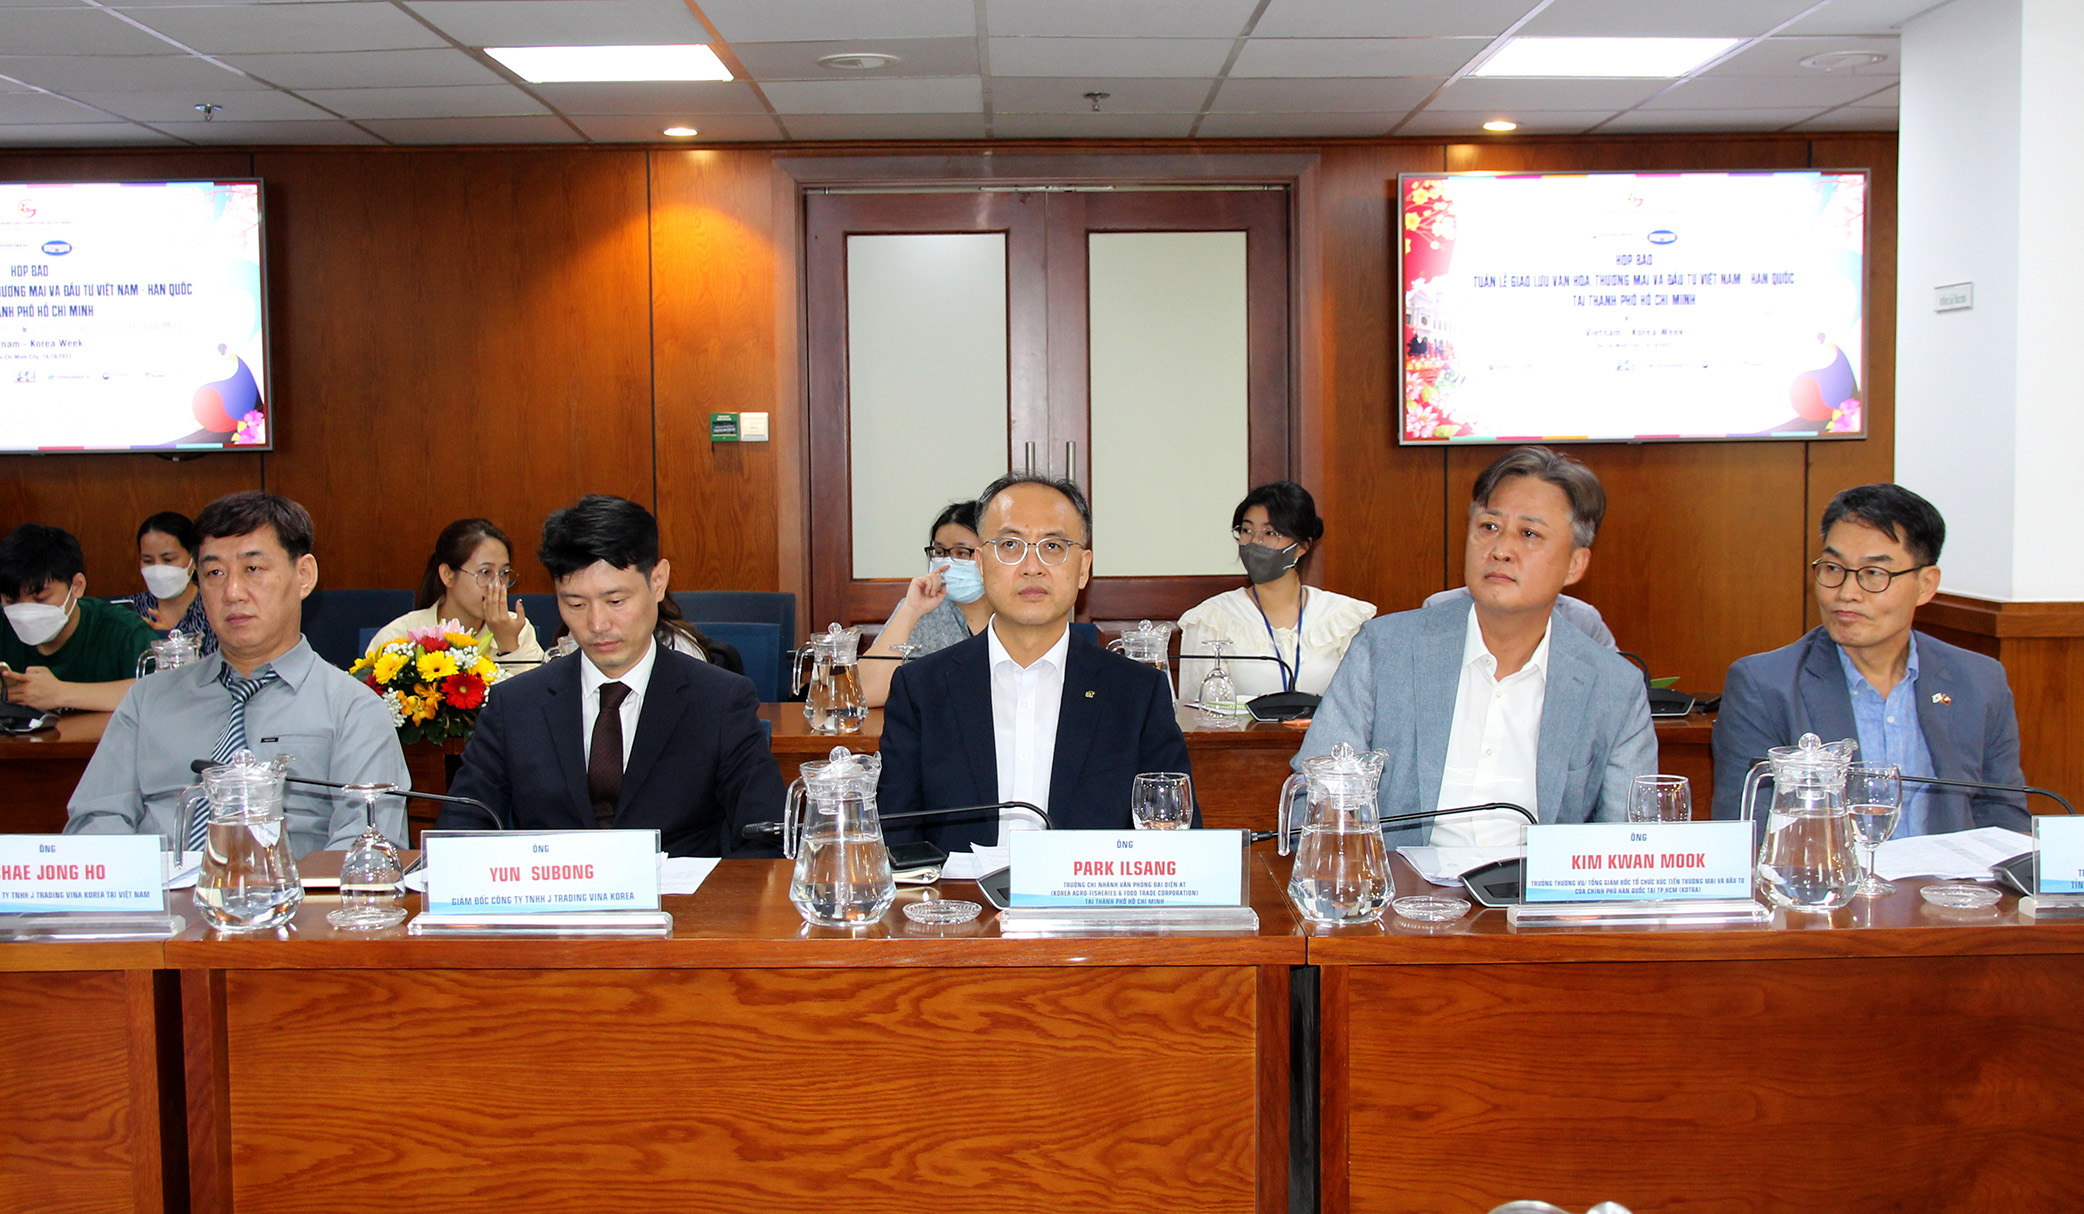 Đại diện các tổ chức của Hàn Quốc tham gia trong Tuần lễ giao lưu Văn hóa, Thương mại và Đầu tư Việt Nam – Hàn Quốc tại TP. Hồ Chí Minh tại buổi họp báo (Ảnh: H.Hào)